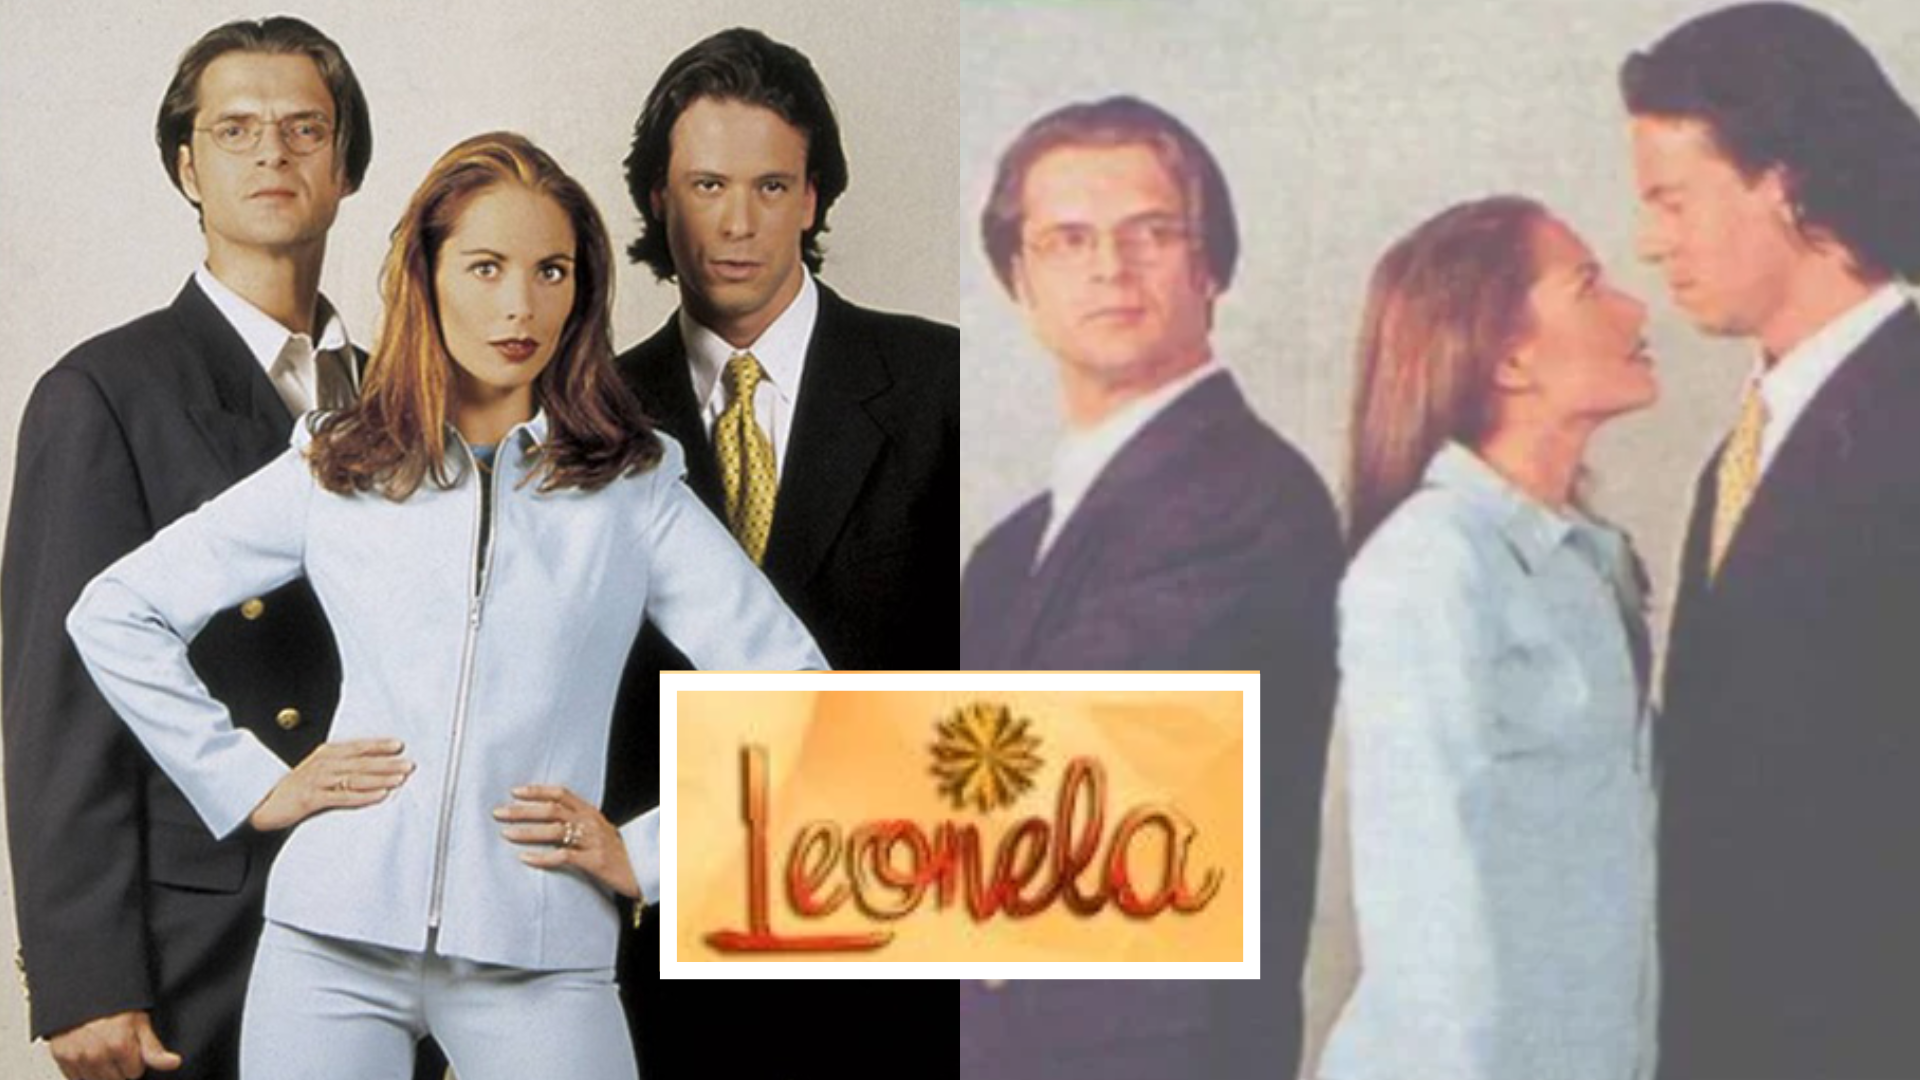 “Leonela, muriendo de amor”, la polémica telenovela peruana que cumple 25 años y cuyos protagonistas tuvieron un trágico final